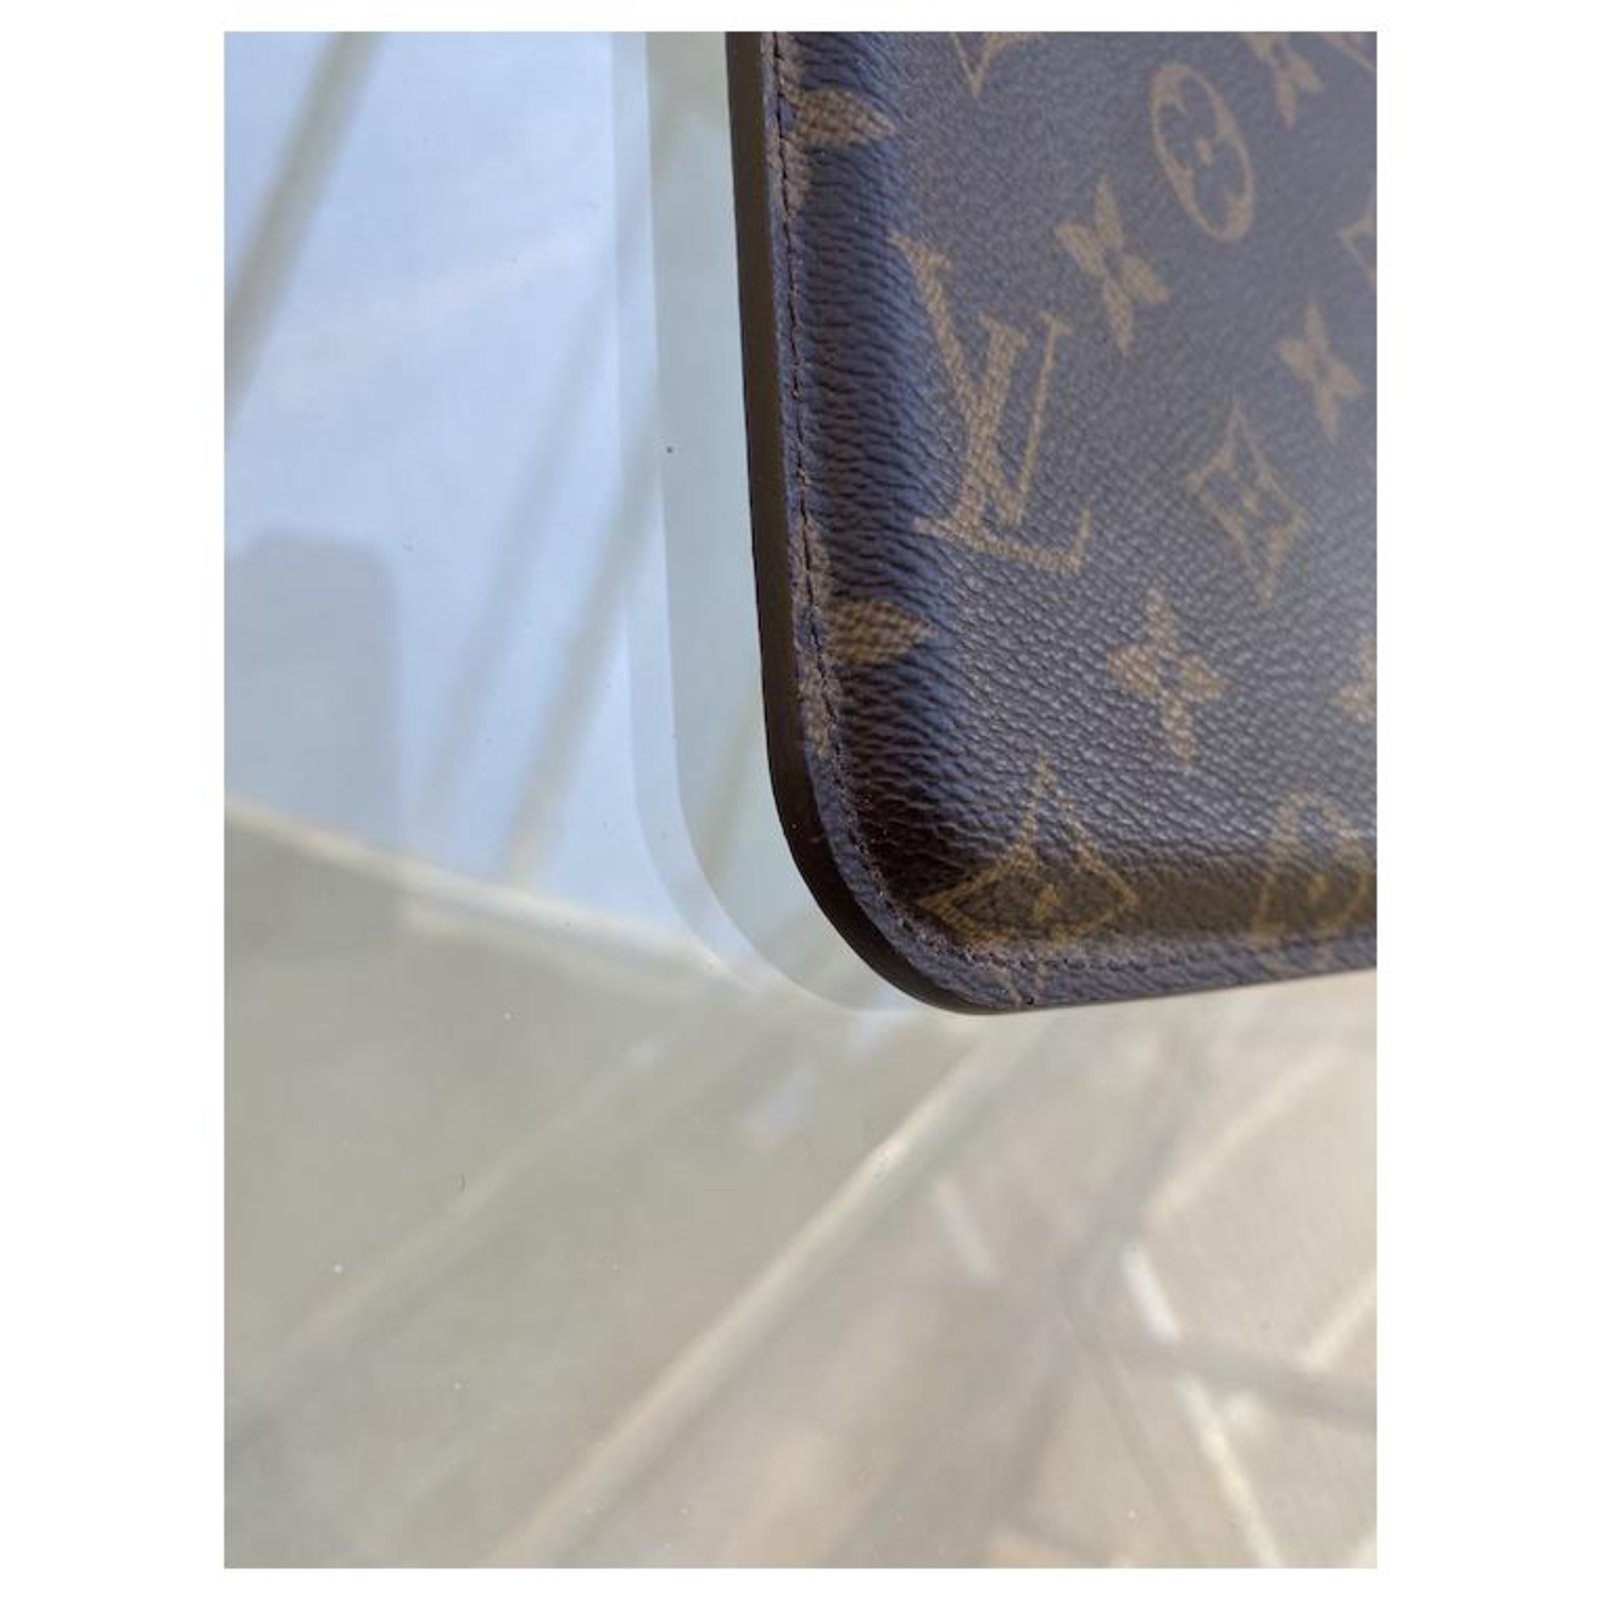 Louis Vuitton iPad Case -  Canada